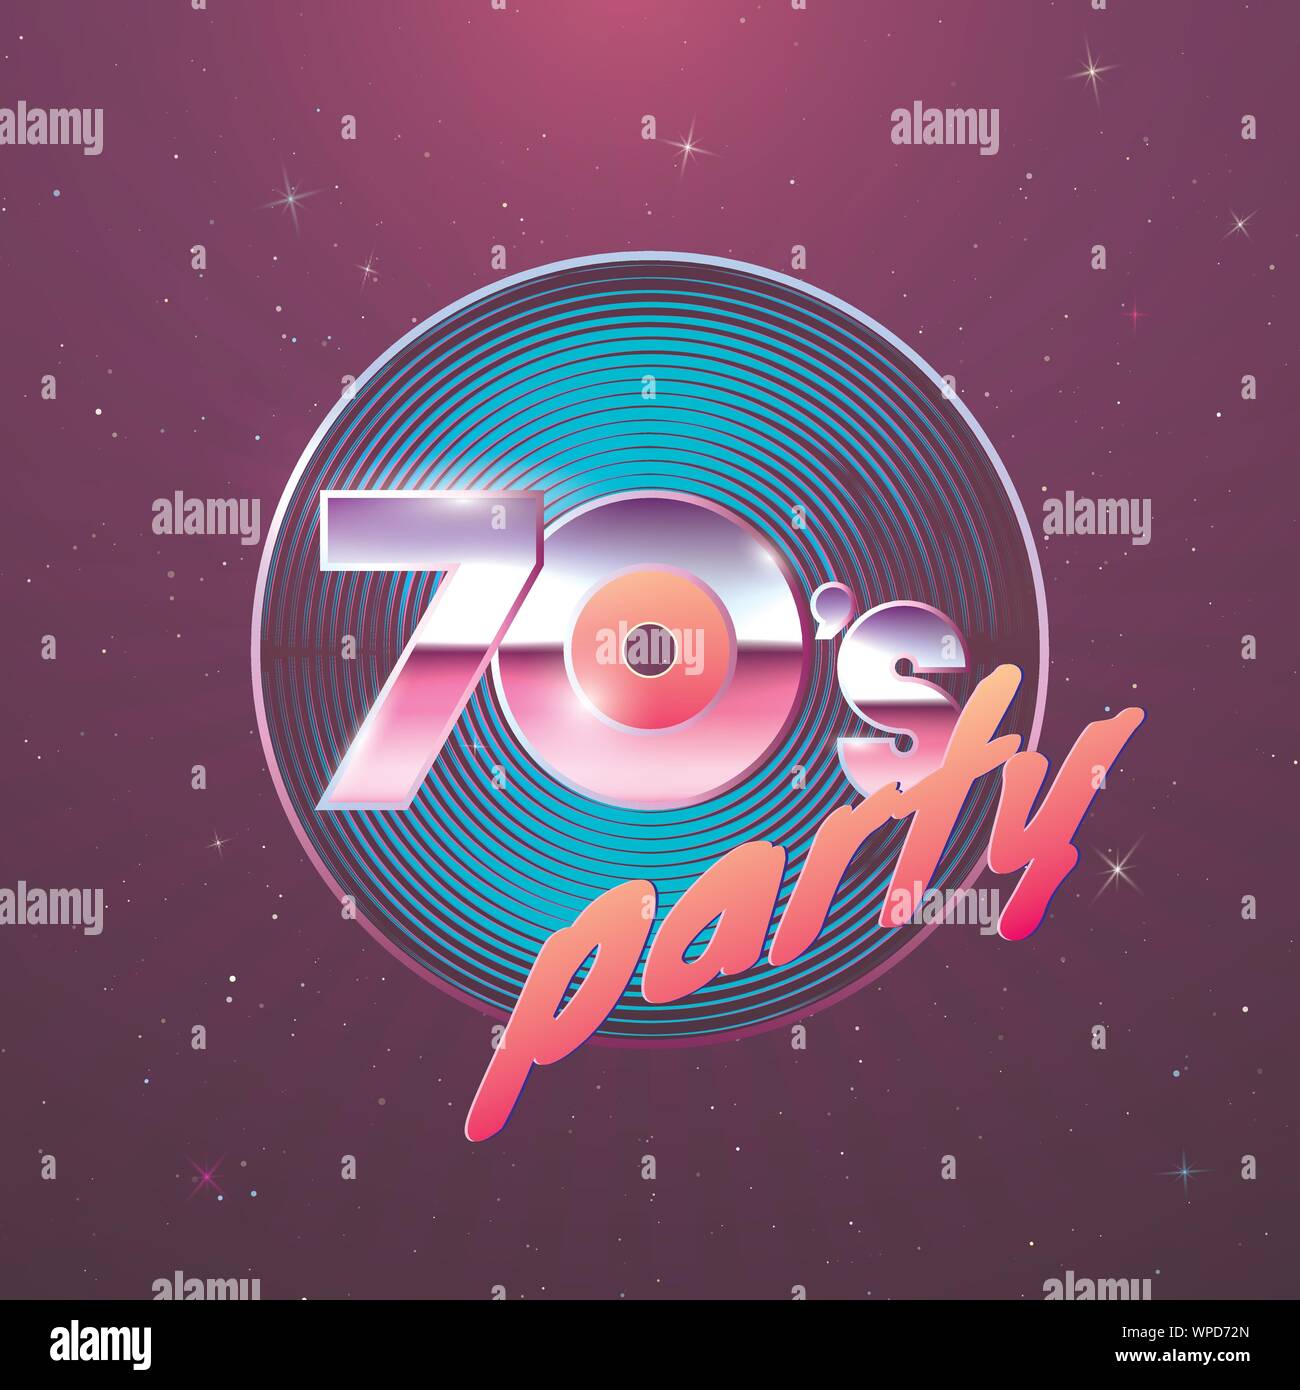 Paster Vorlage für Retro Disco Party 70er. Schallplatte und Neon Farben Element der 1970er Stil. Vintage Musik Flyer. Vector Illustration Stock Vektor